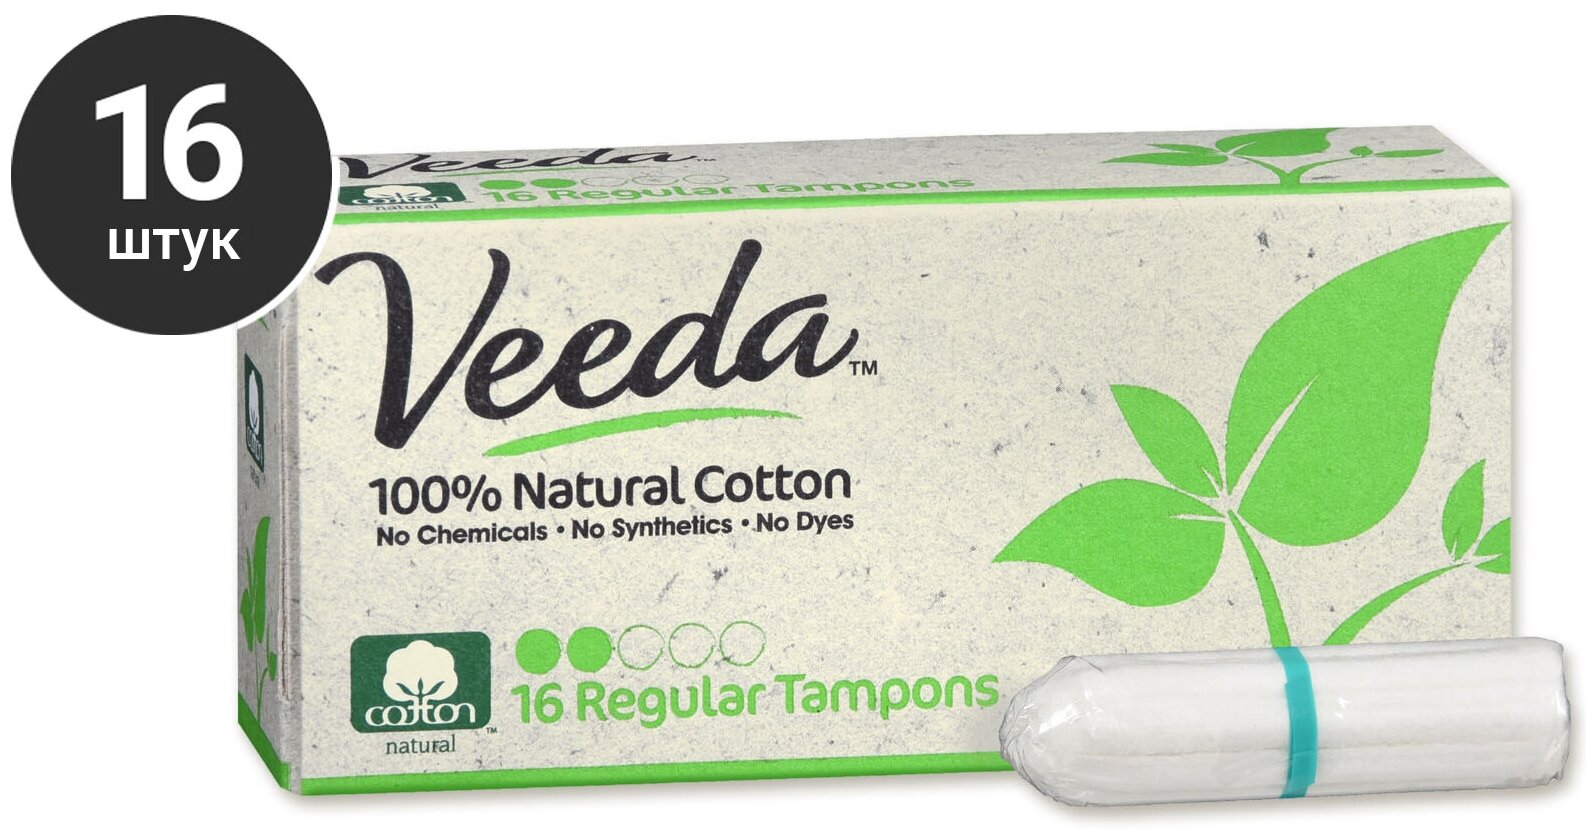 Veeda Тампоны Regular Tampons из натурального хлопка без аппликатора, 16 шт